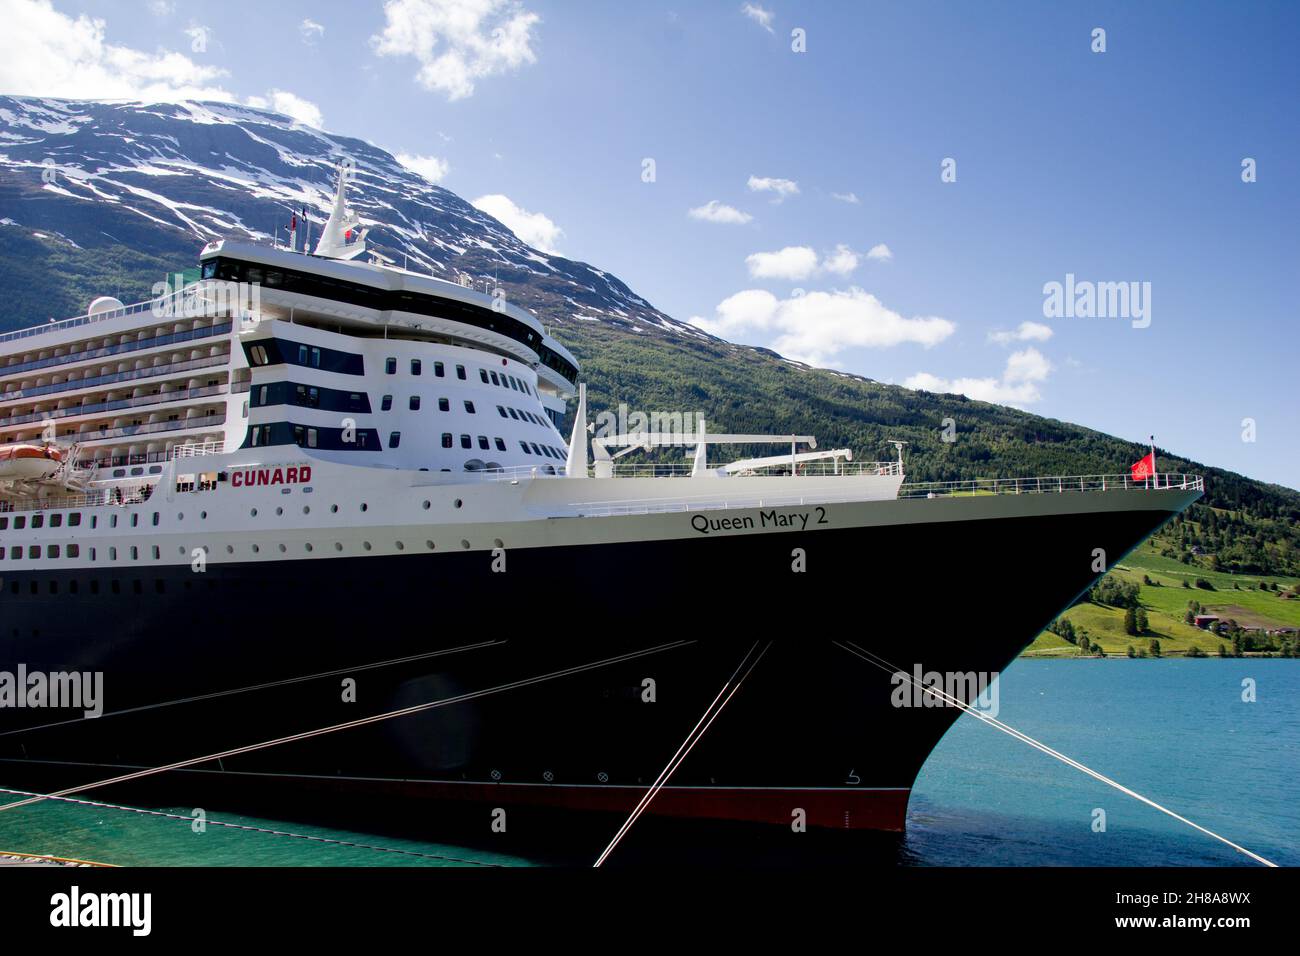 Le Cunard Liner Queen Mary 2 amarré à Olden dans le Nordfjorden, en Norvège.Comté de Sogn og Fjordane. Banque D'Images